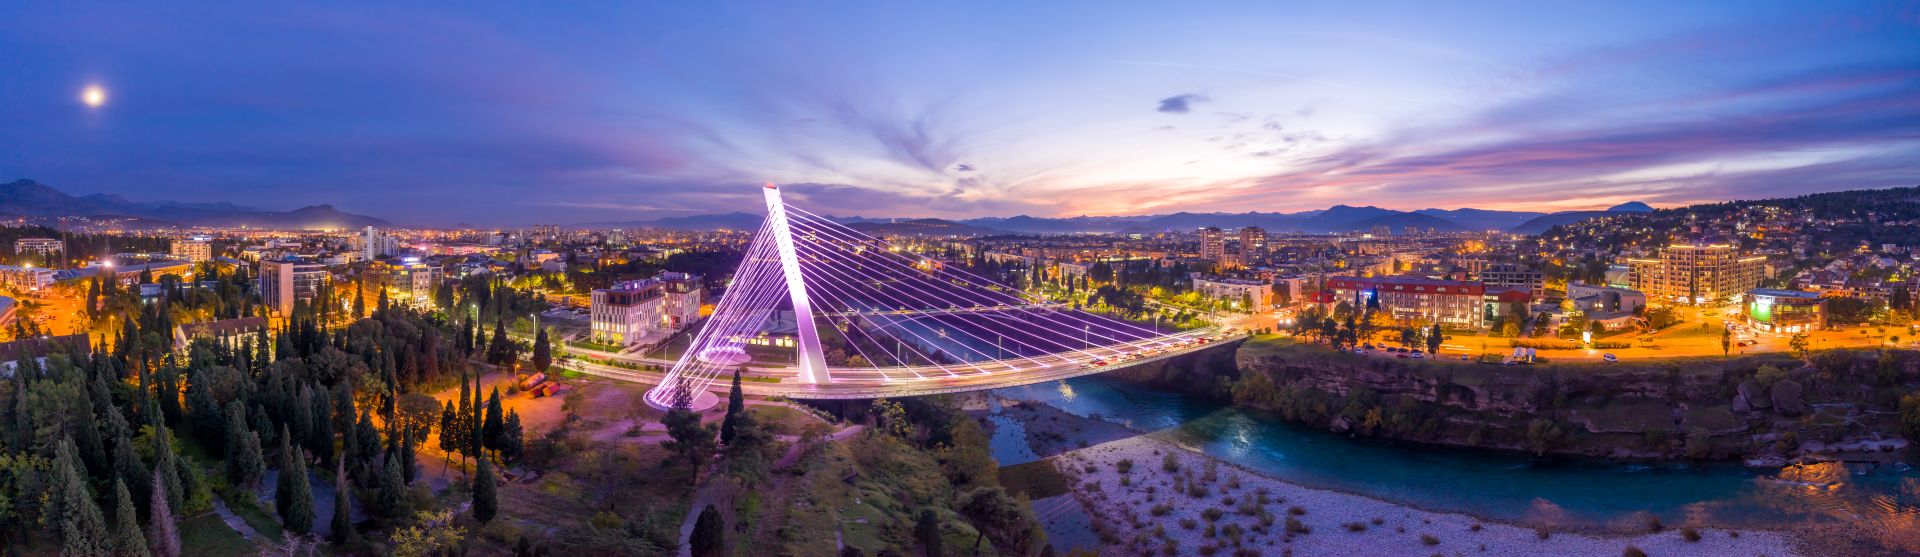 Puente milenario iluminado sobre el río Moraca